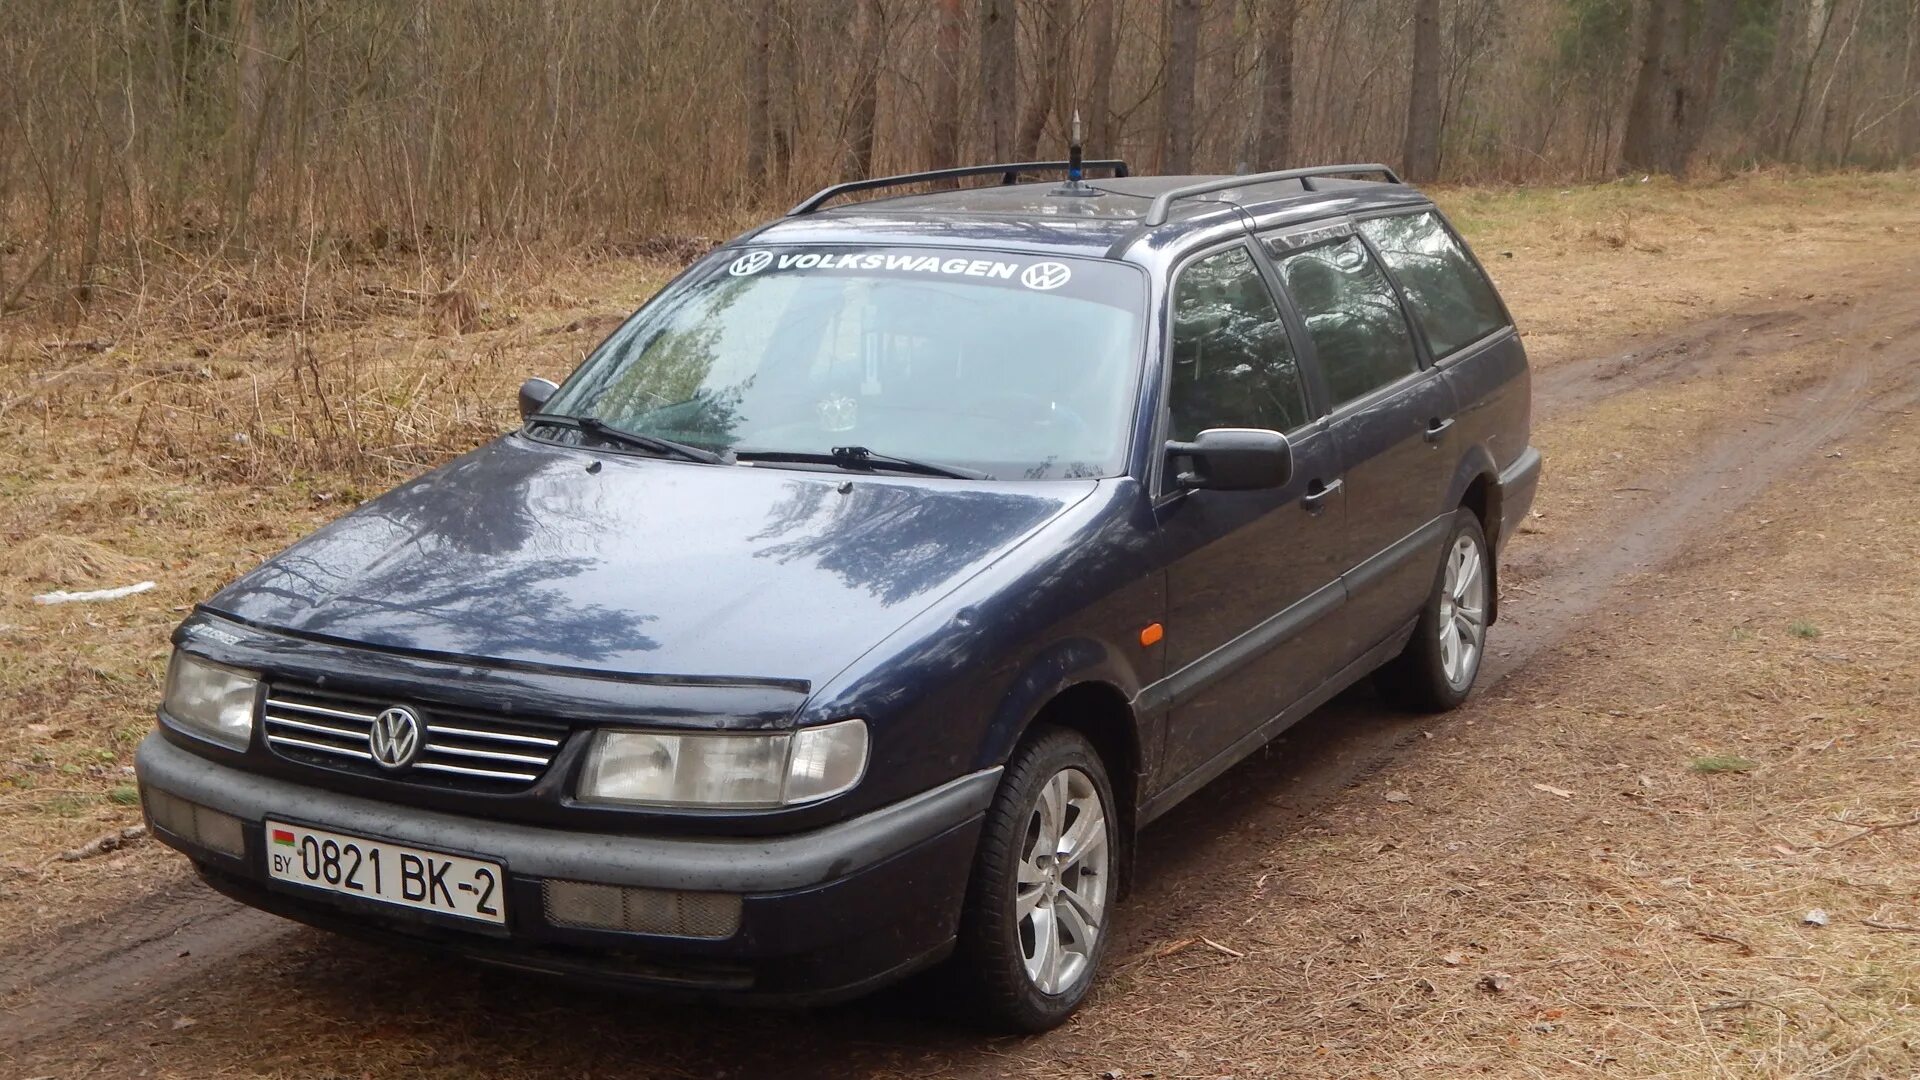 Фольксваген Пассат б4 универсал. Volkswagen Passat b4 синий. Пассат б4 универсал Pacific. Volkswagen Passat (b4) 1993-1996 универсал.